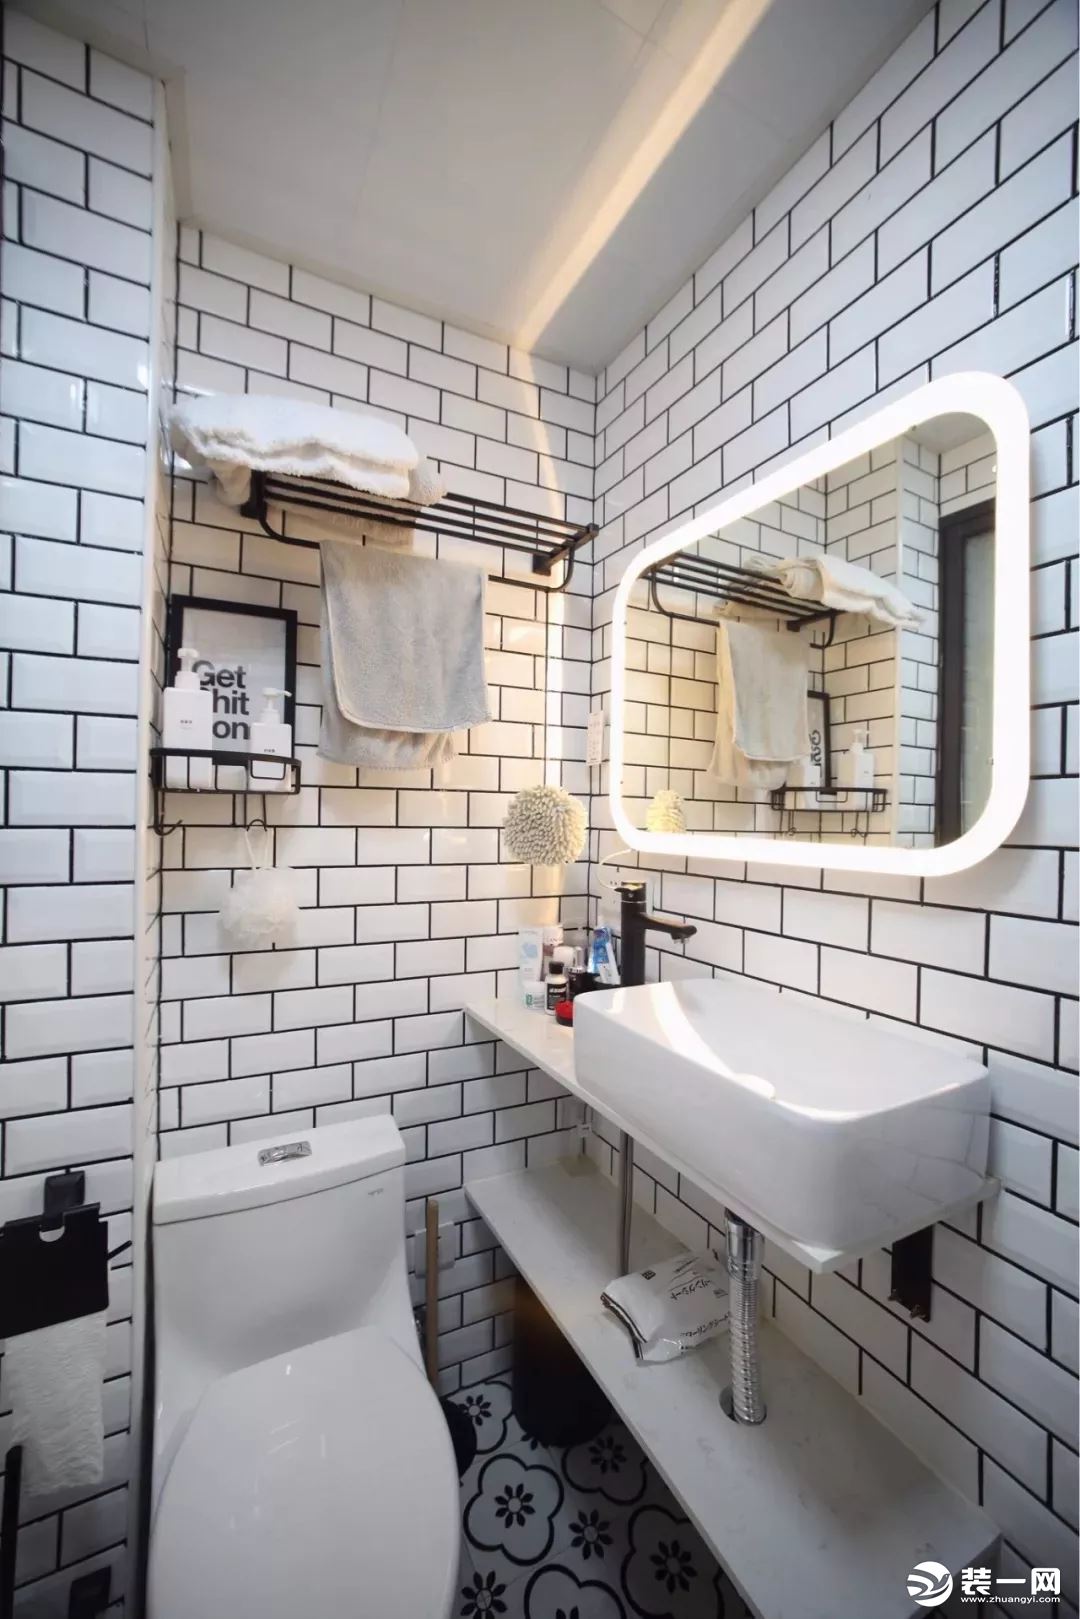 小卫生间装修技巧小卫生间瓷砖搭配黑白